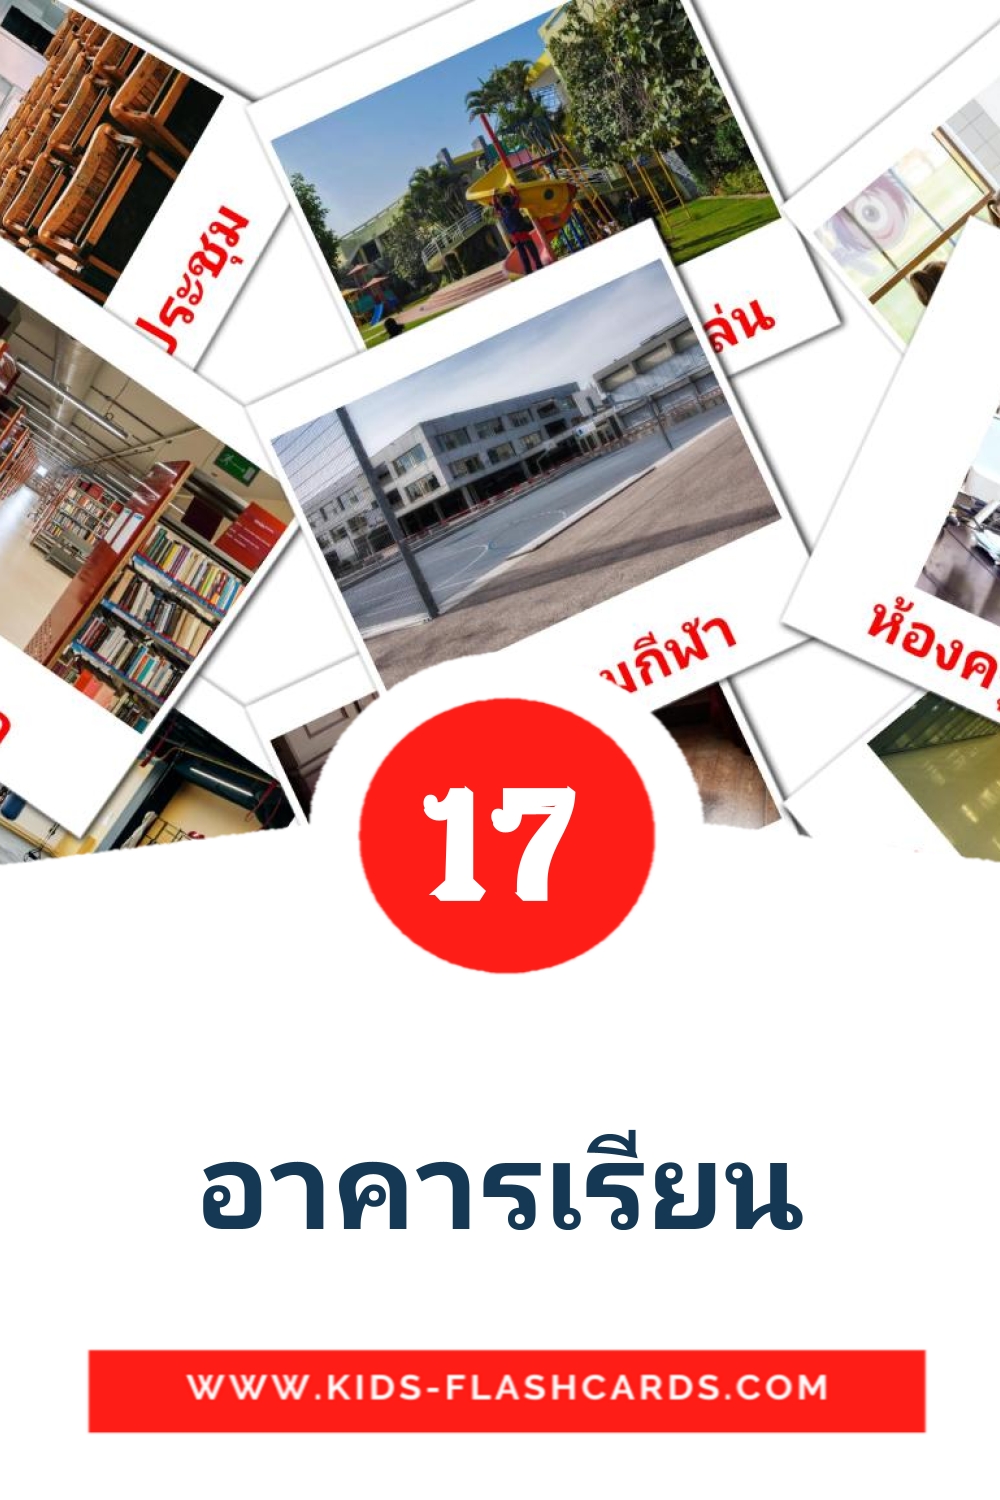 17 tarjetas didacticas de อาคารเรียน para el jardín de infancia en tailandés